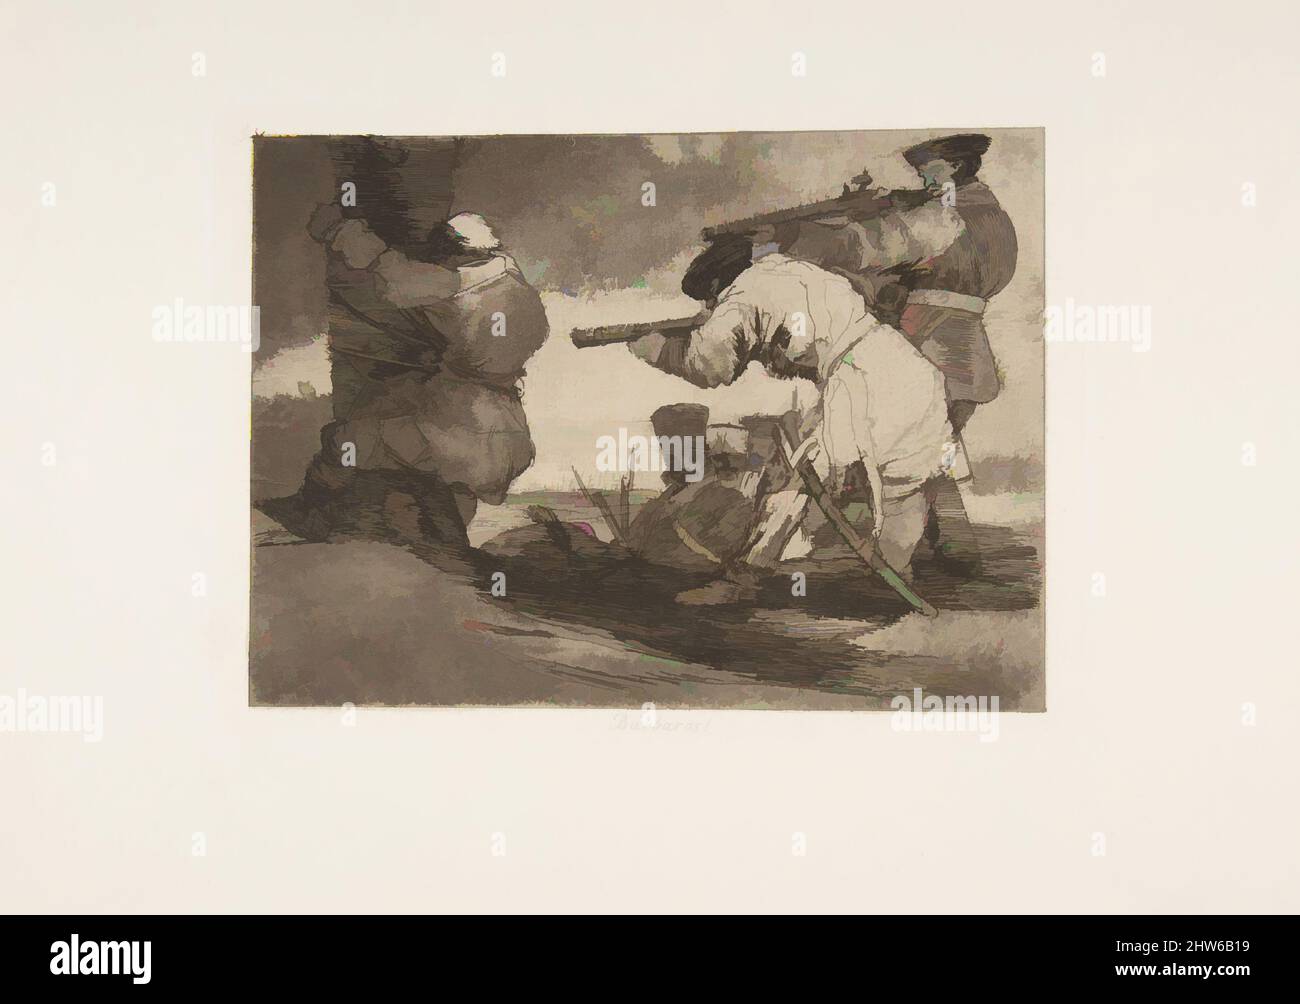 Art inspiré par la planche 38 de 'les désastres de la guerre' (Los Desastres de la Guerra):'Barbarians!' (Bárbaros!), 1810 (publié en 1863), Etching, burnished aquatint, burin et burnisher, Plaque : 6 po × 8 3/16 po (15,3 × 20,8 cm), Prints, Goya (Francisco de Goya y Lucientes) (espagnol, oeuvres classiques modernisées par Artotop avec une touche de modernité. Formes, couleur et valeur, impact visuel accrocheur sur l'art émotions par la liberté d'œuvres d'art d'une manière contemporaine. Un message intemporel qui cherche une nouvelle direction créative. Artistes qui se tournent vers le support numérique et créent le NFT Artotop Banque D'Images